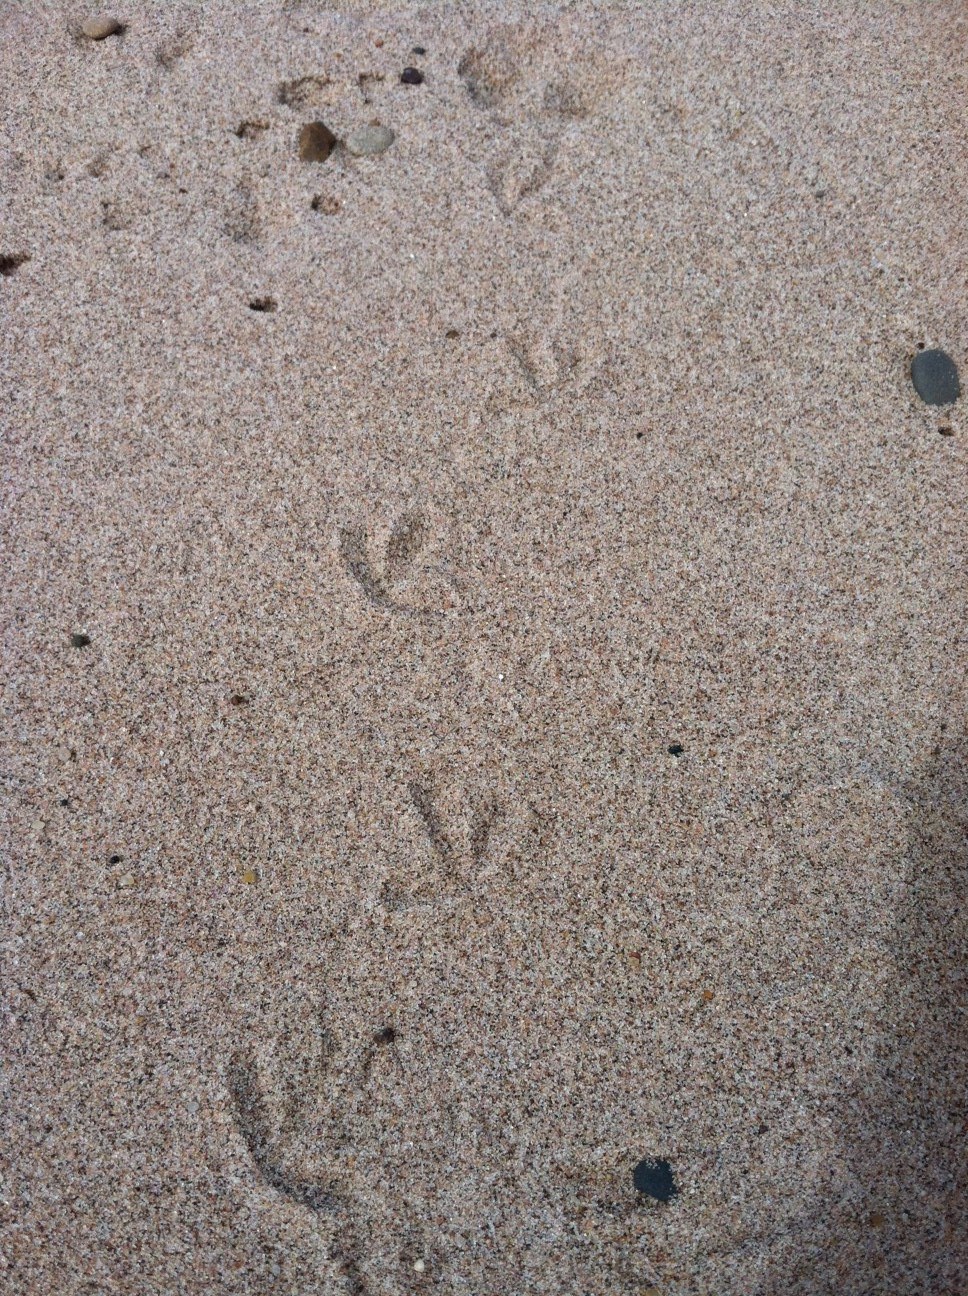 Tiny bird tracks in sand.